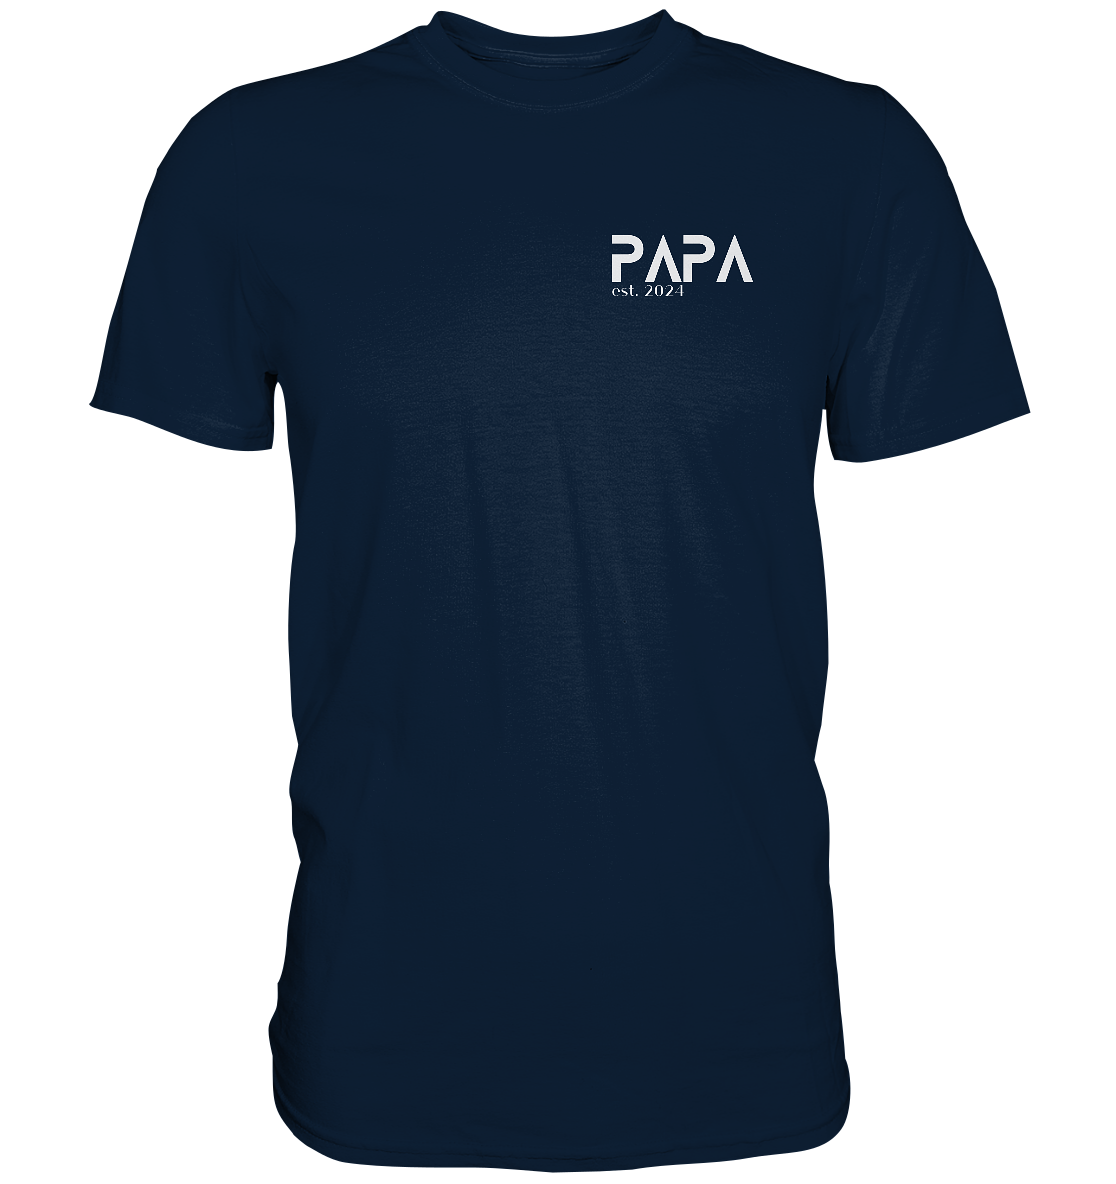 Ein Papa T-Shirt mit minimalistischem Design von ShirtDesire. Personalisierter Druck, hochwertige Materialien. Perfekt für stolze Väter, die ihren eigenen Stil ausdrücken möchten.